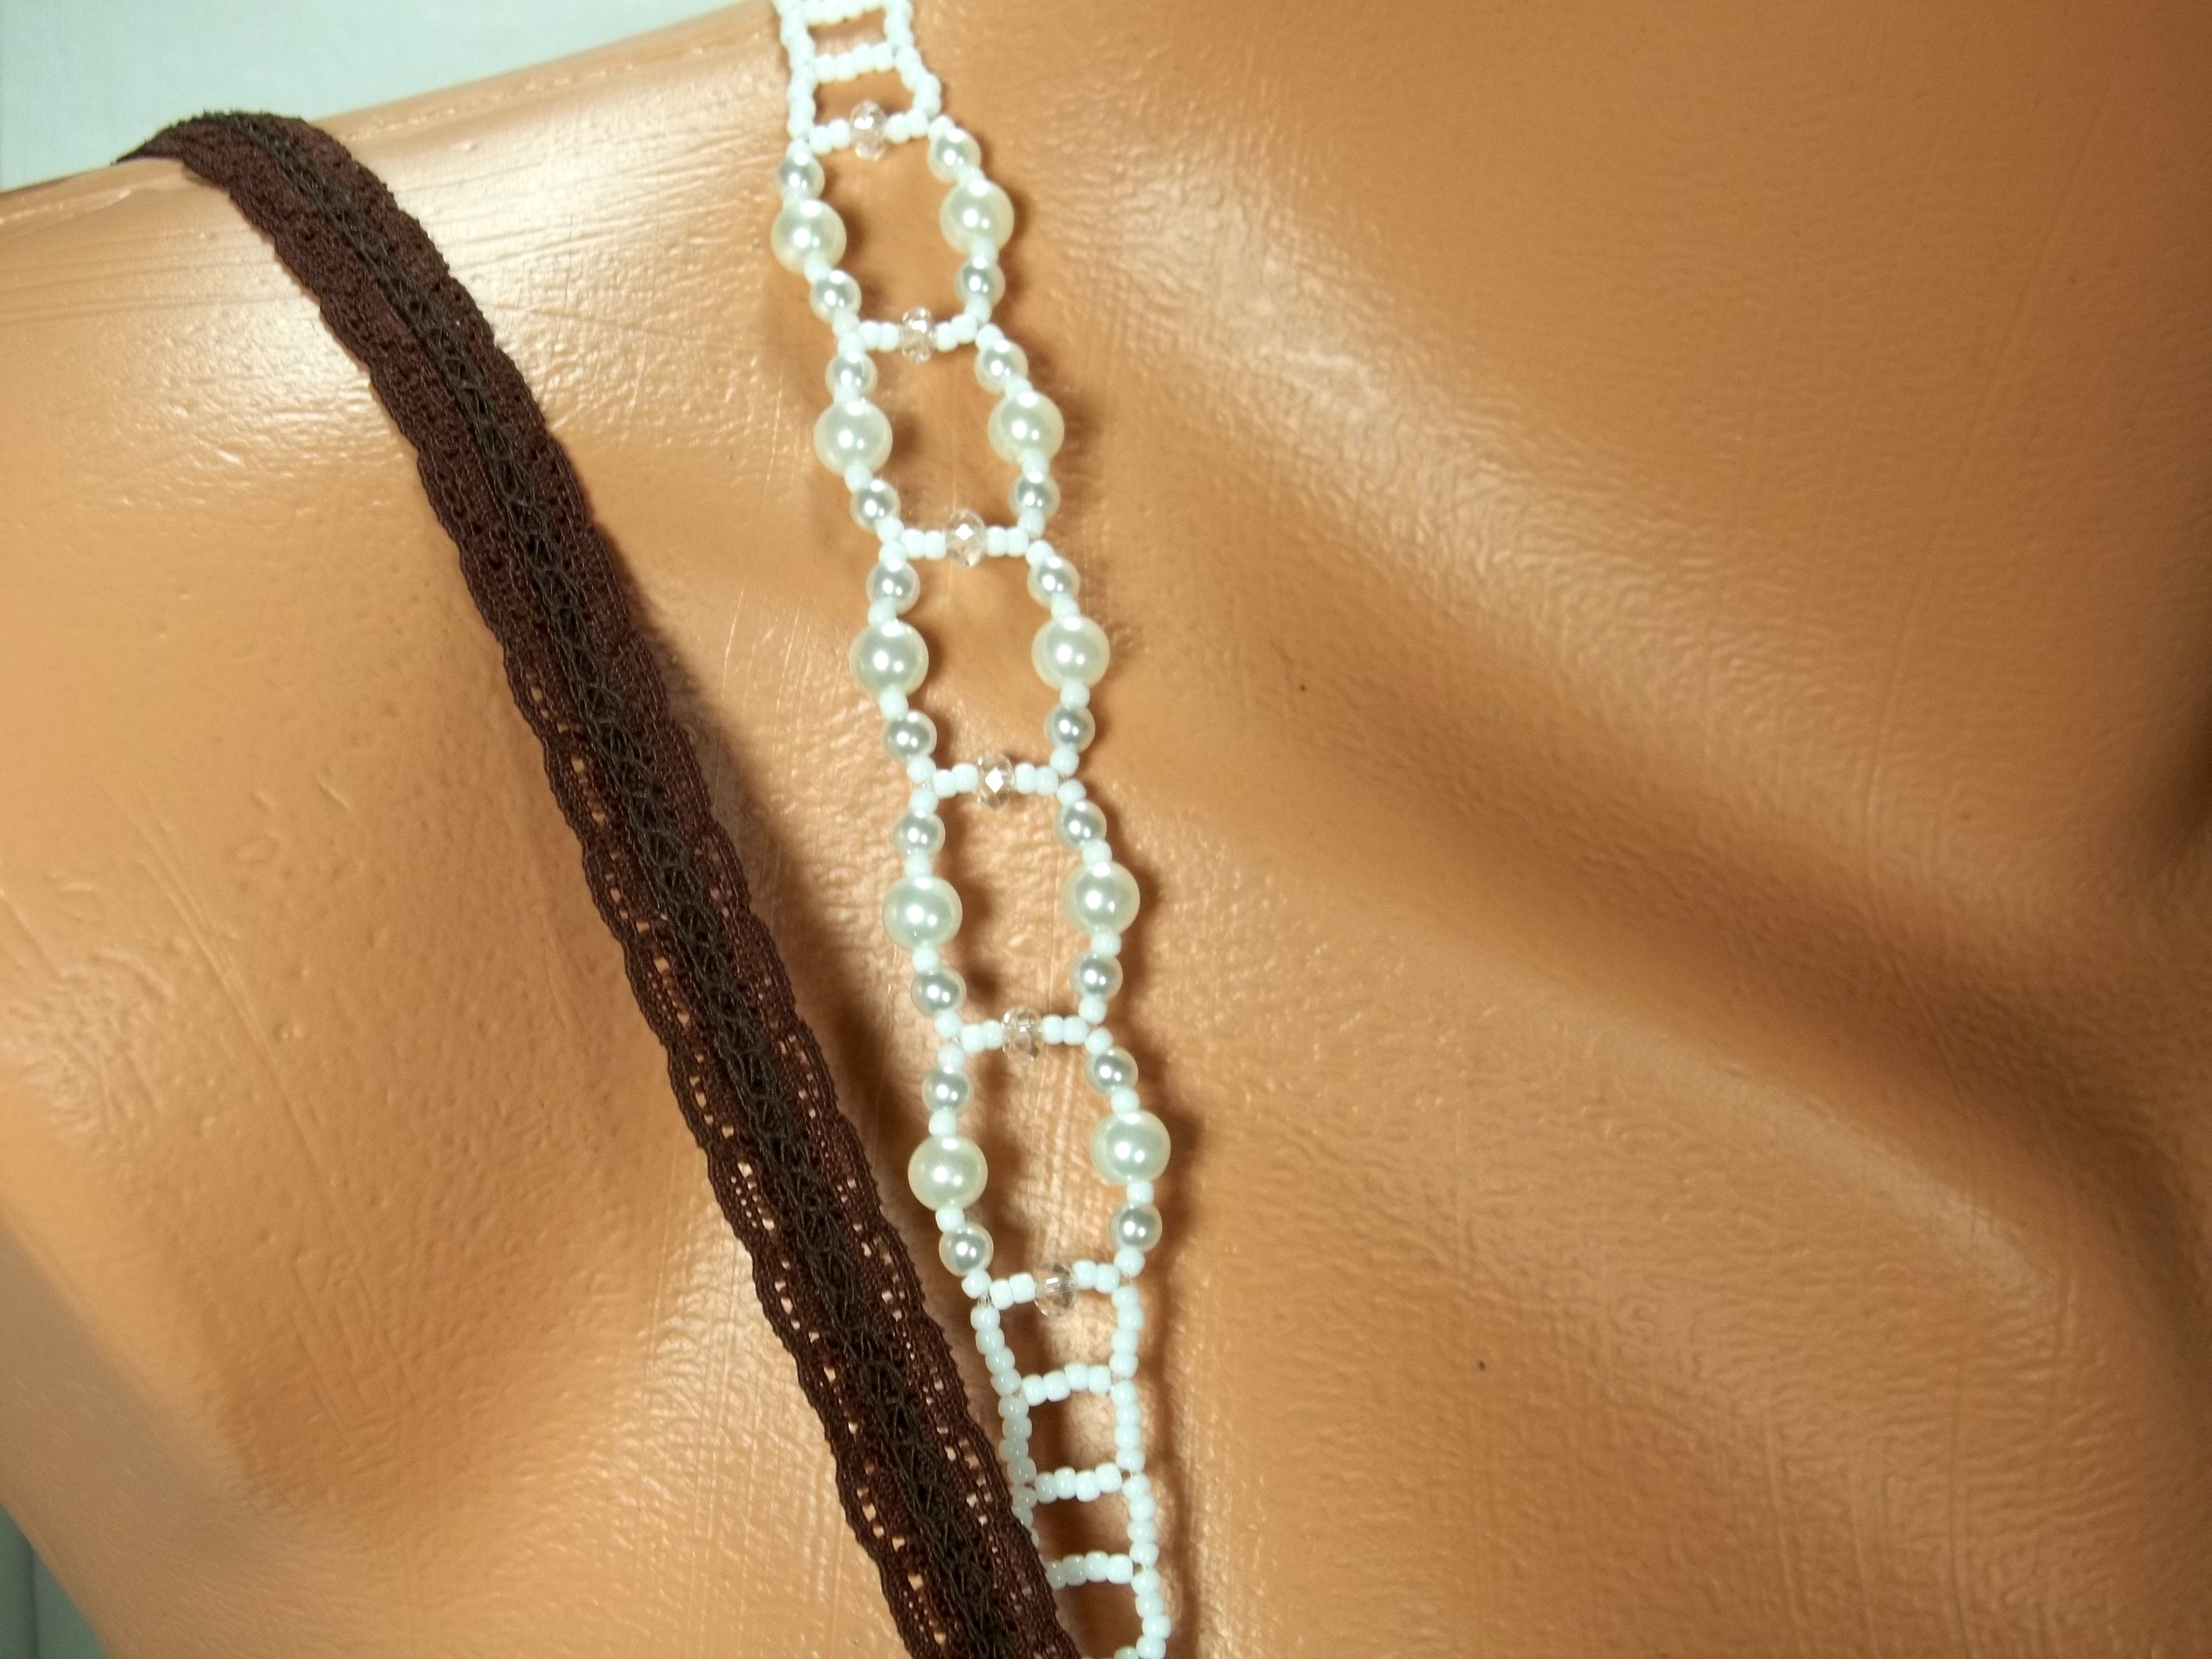 Masala Beads Pearls Stone Bra Strap Adjustable Shoulder Strap Underwear Bra  Accessories - Fashion, Bra Straps